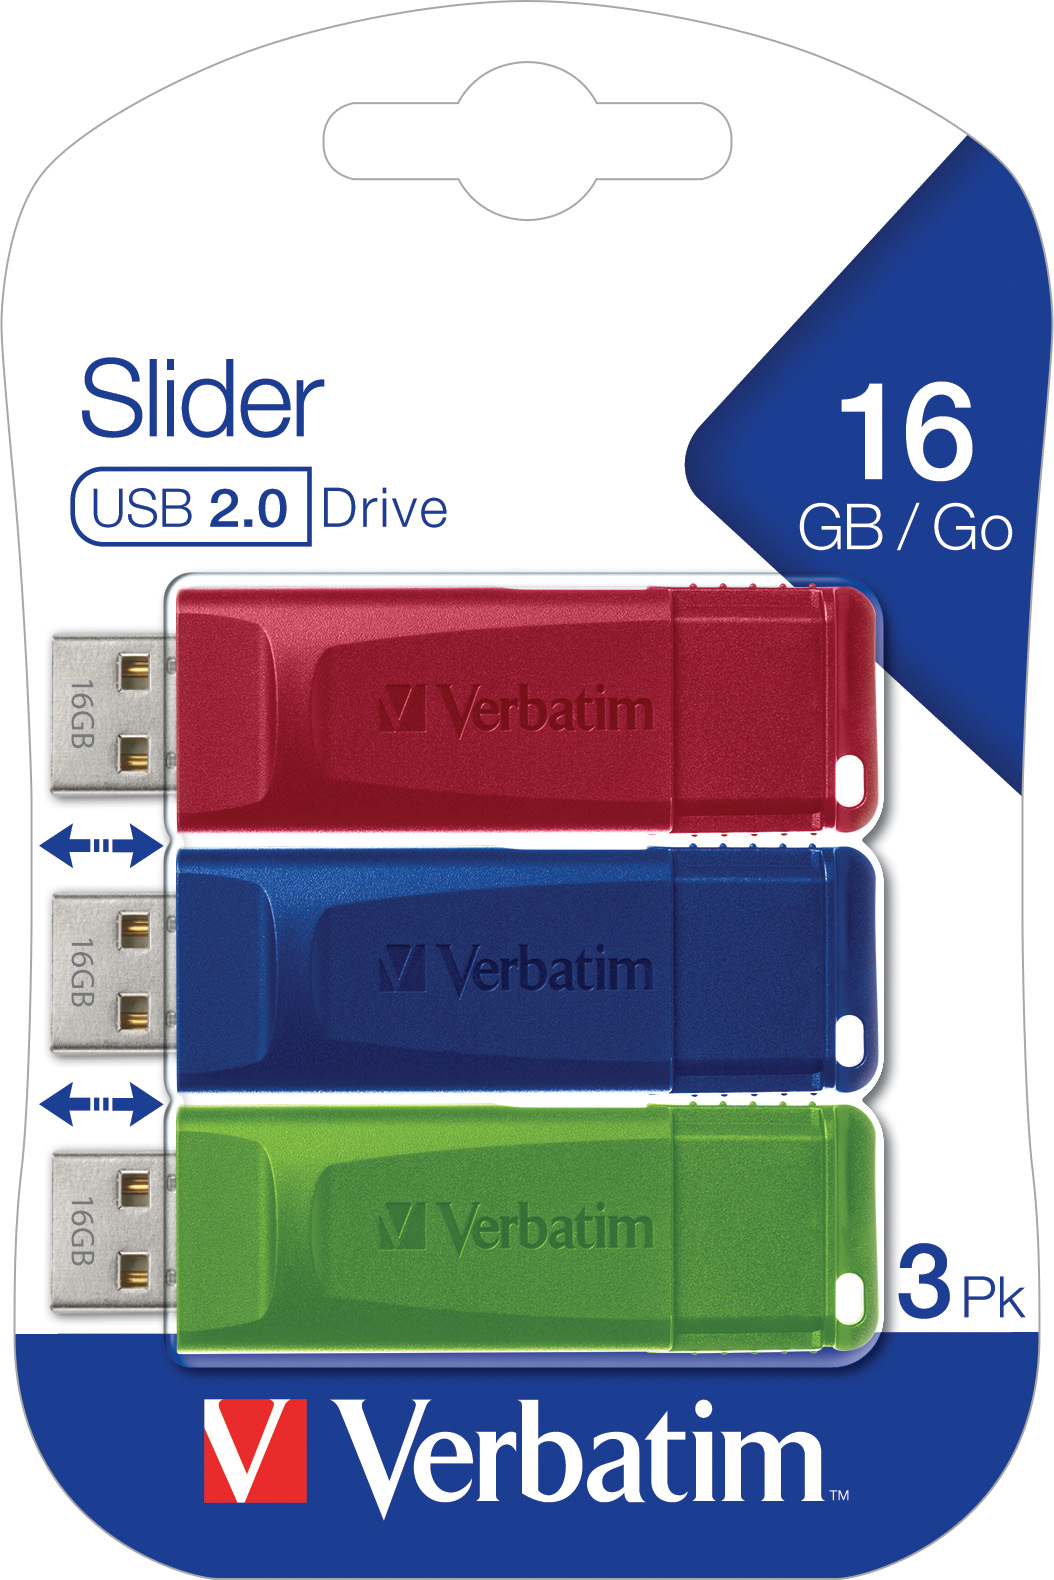 Verbatim USB 2.0 Stick 16GB, Slider, rot-blau-grün, Multipack (R) 10MB/s, (W) 4MB/s, Retail-Blister (3-Pack)